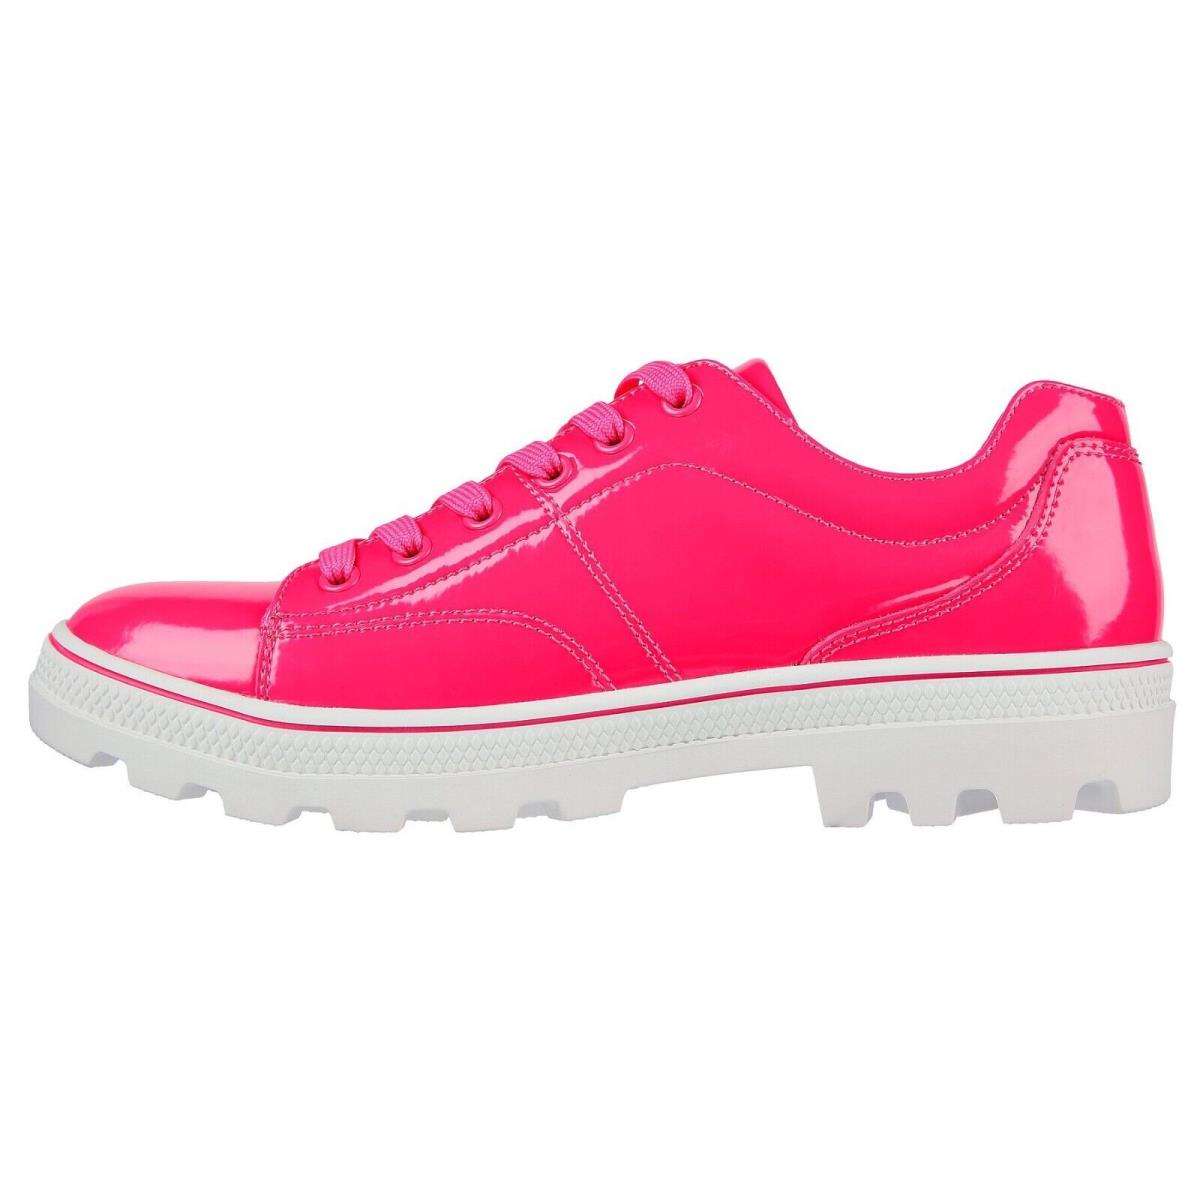 Skechers shoes Roadies - Hot Pink 9